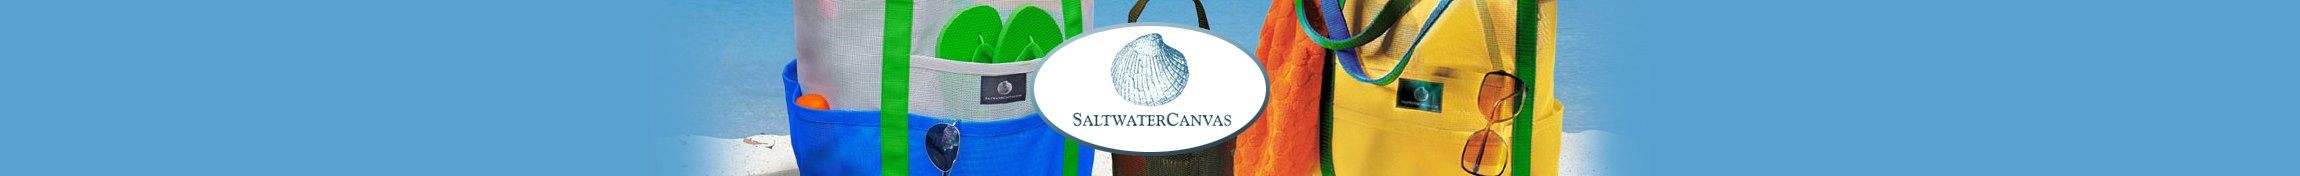 Saltwater Canvas